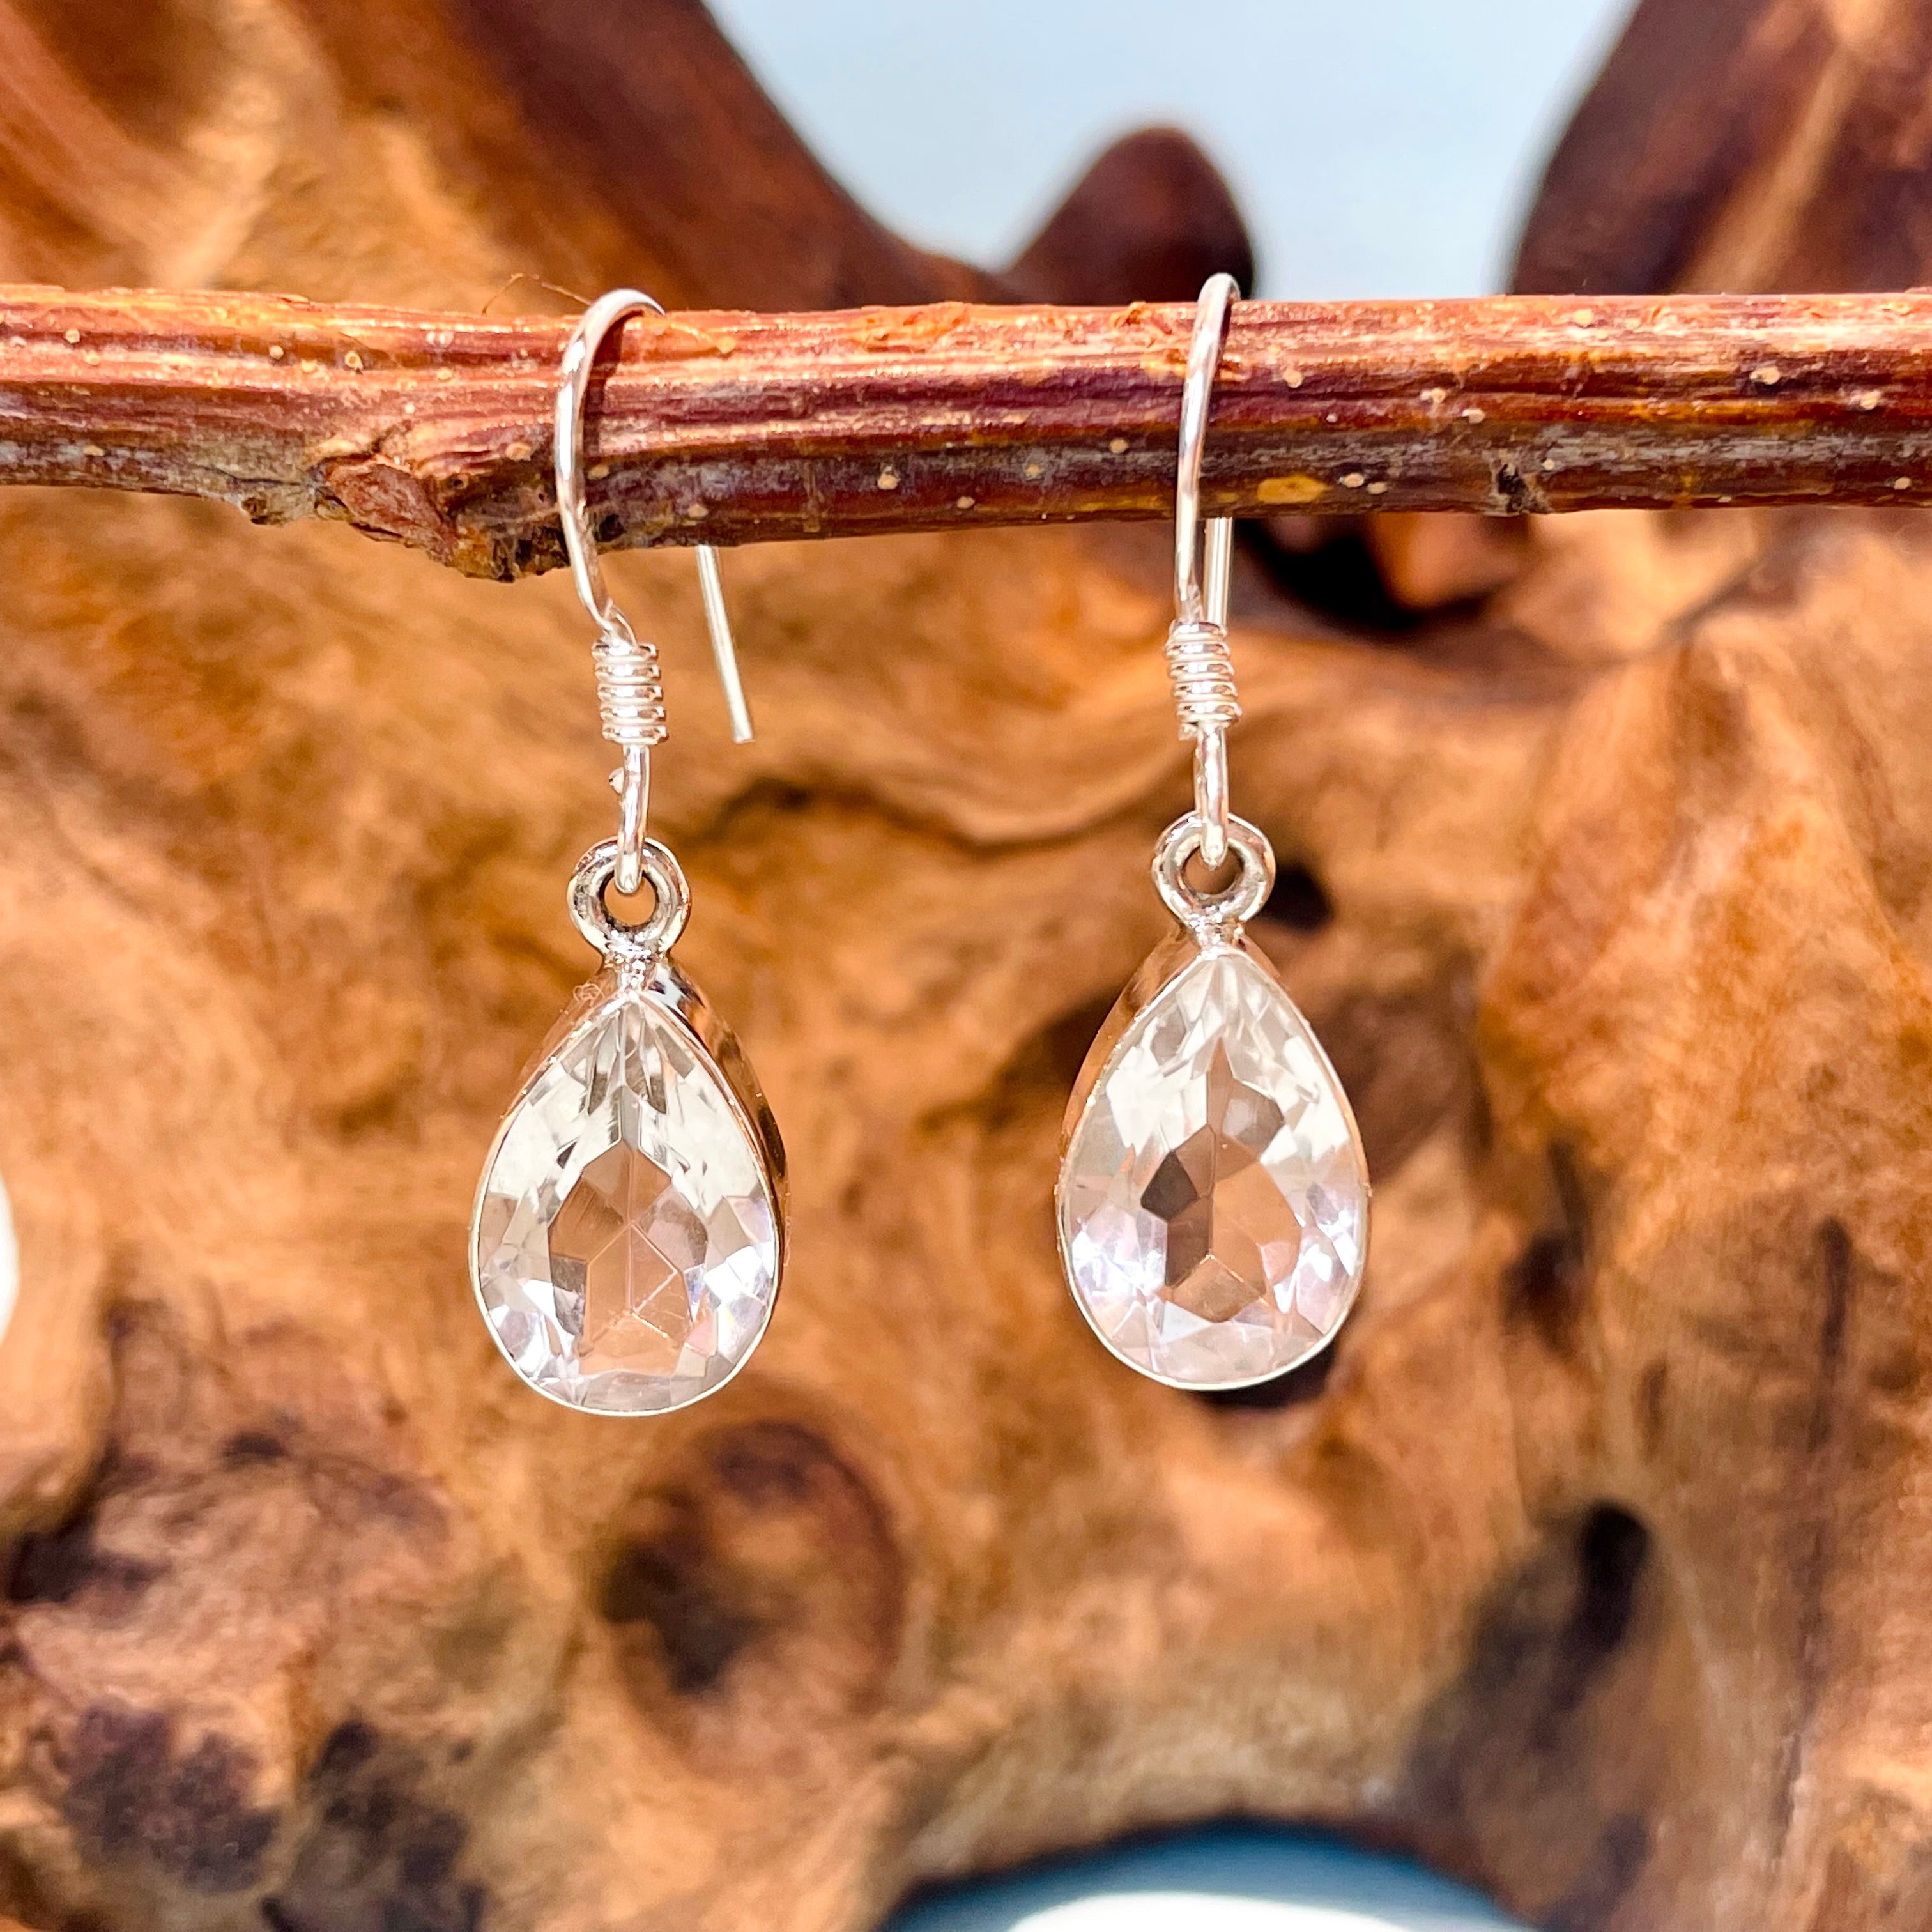 Clear Quartz tear drop hook earrings in sterling silver